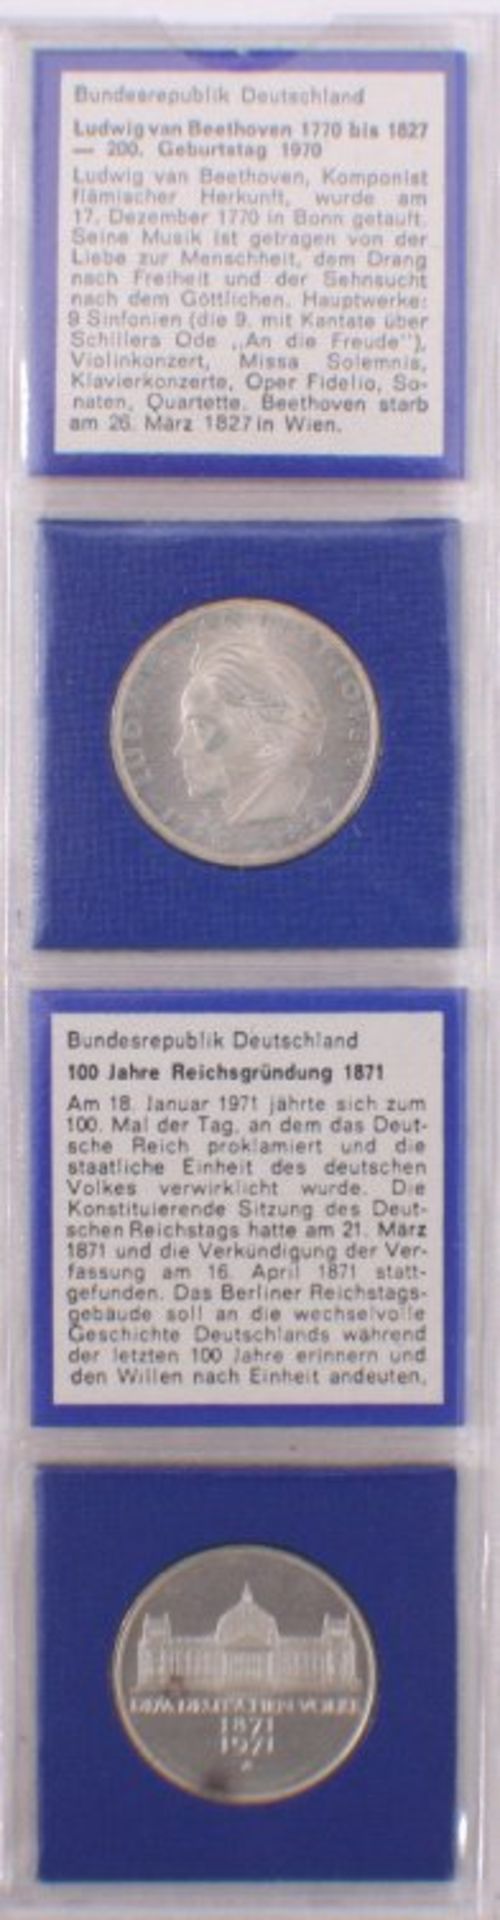 Komplette Sammlung der 5 DM GedenkmünzenAb 1952 Germanisches Museum bis 1986 Friedrich der Große, - Image 2 of 5